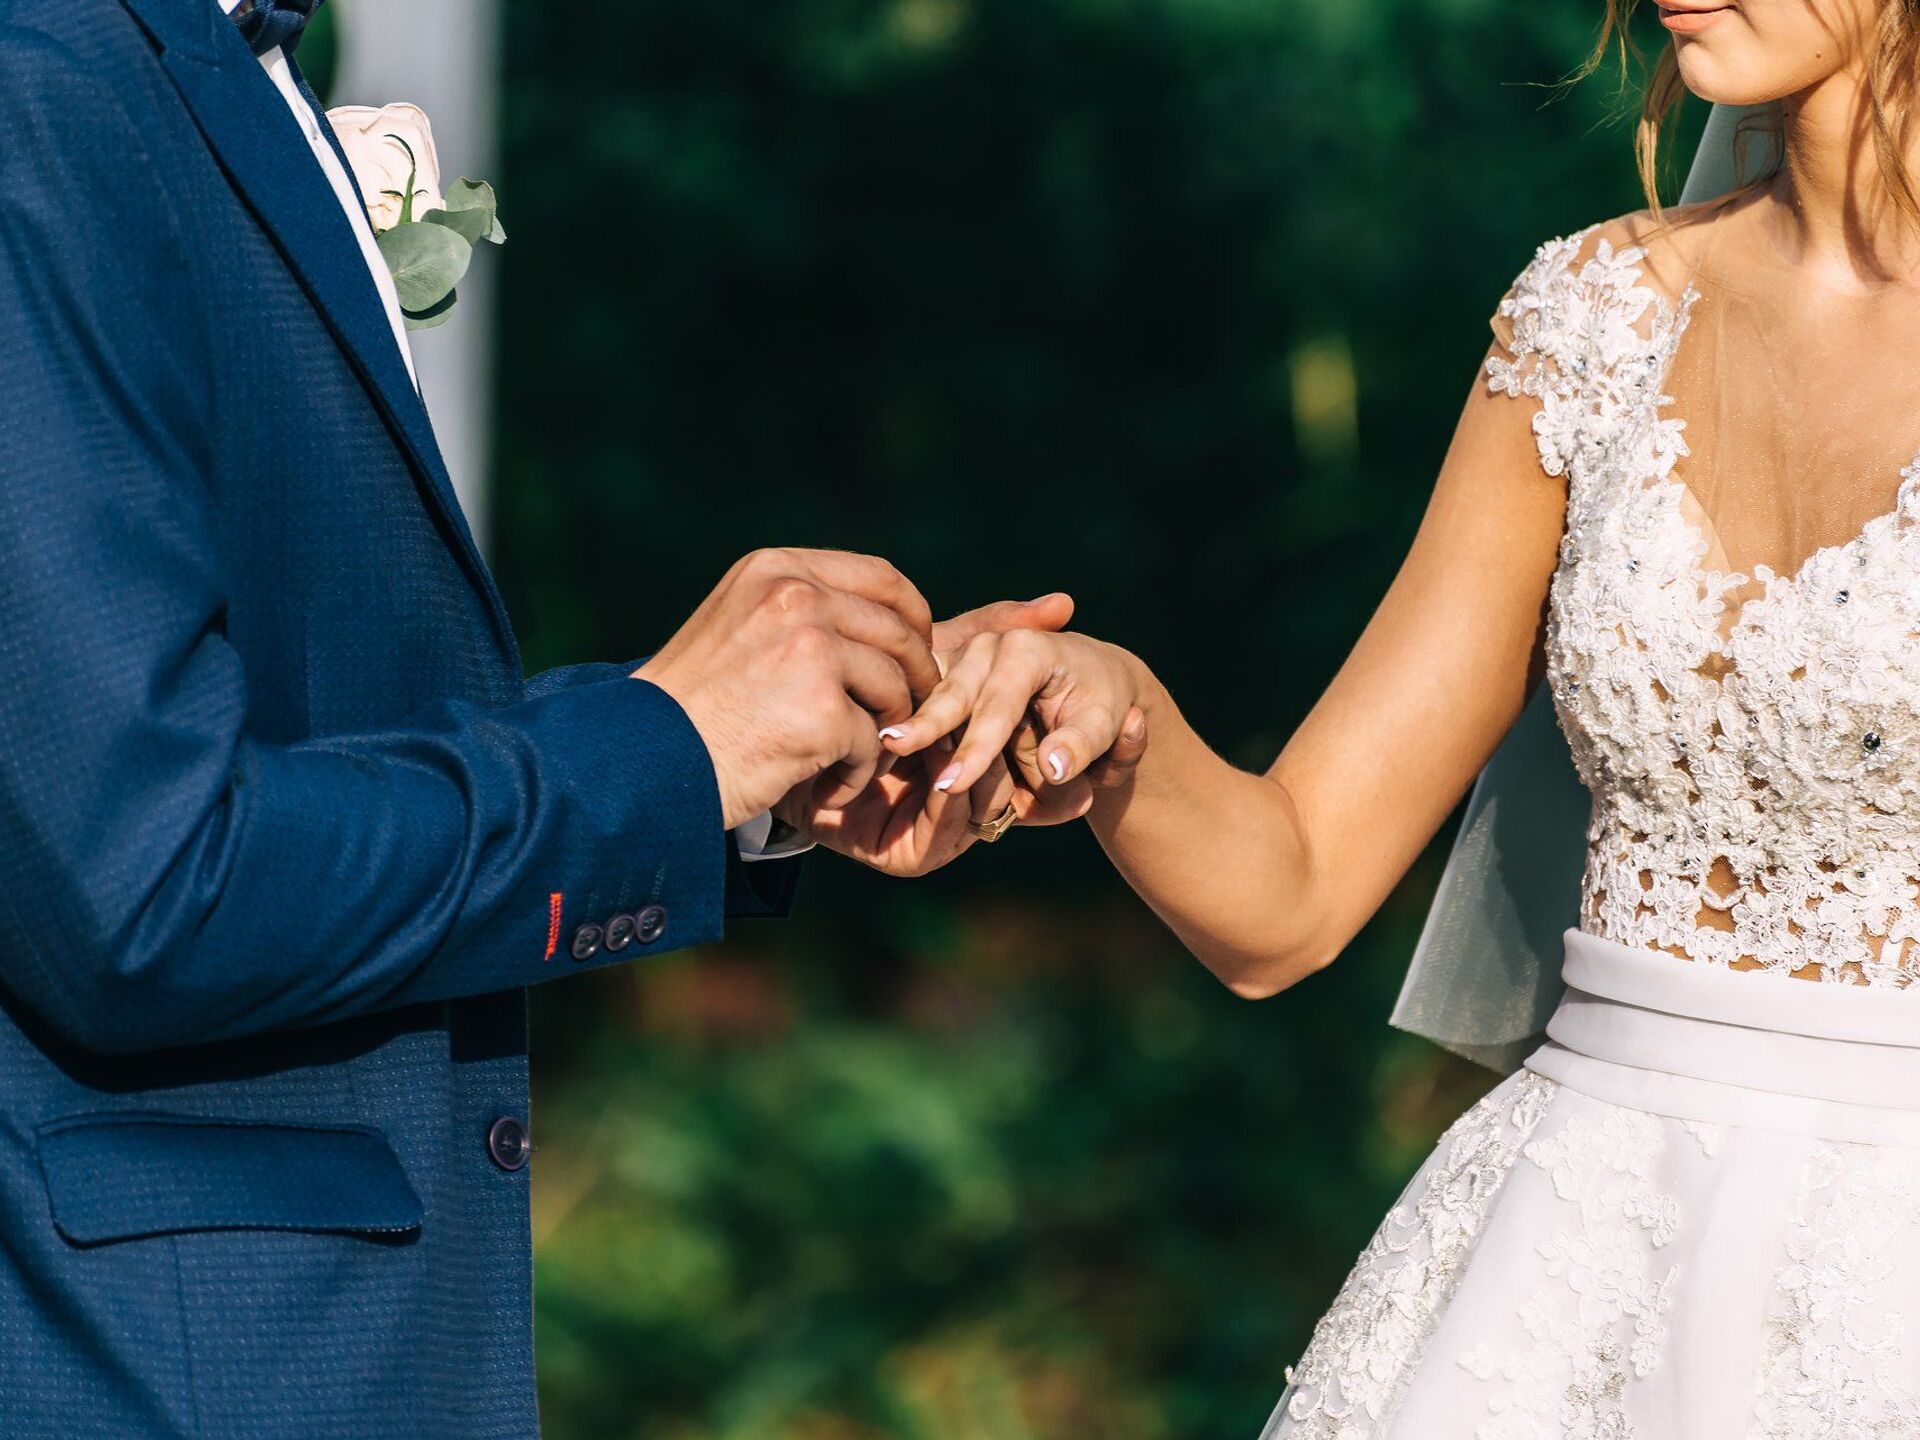 Жених оказался миллионером. Выбор жениха. Свадебная фотосессия в Грузии. Руки жениха и невесты с кольцами. Многолюдная свадьба.